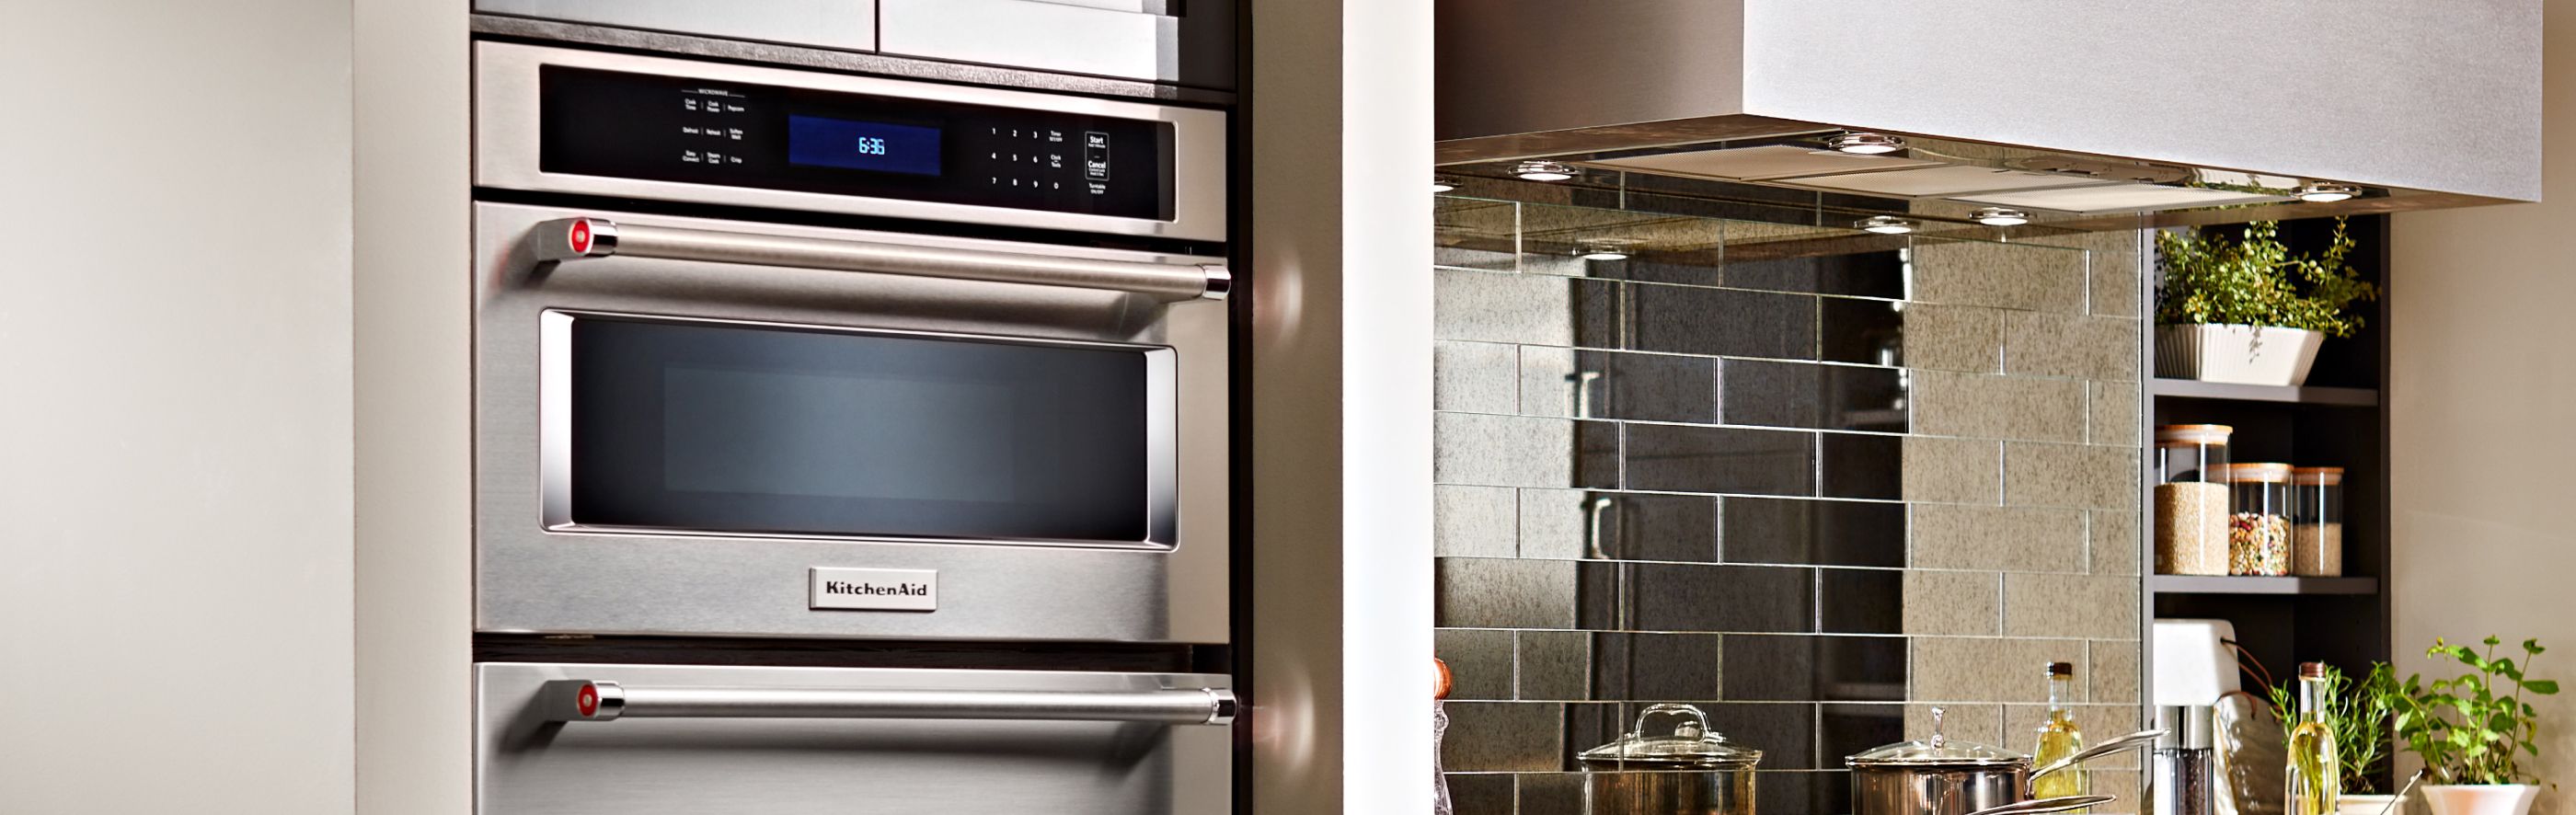 KitchenAid® Built-In Microwave in kitchen